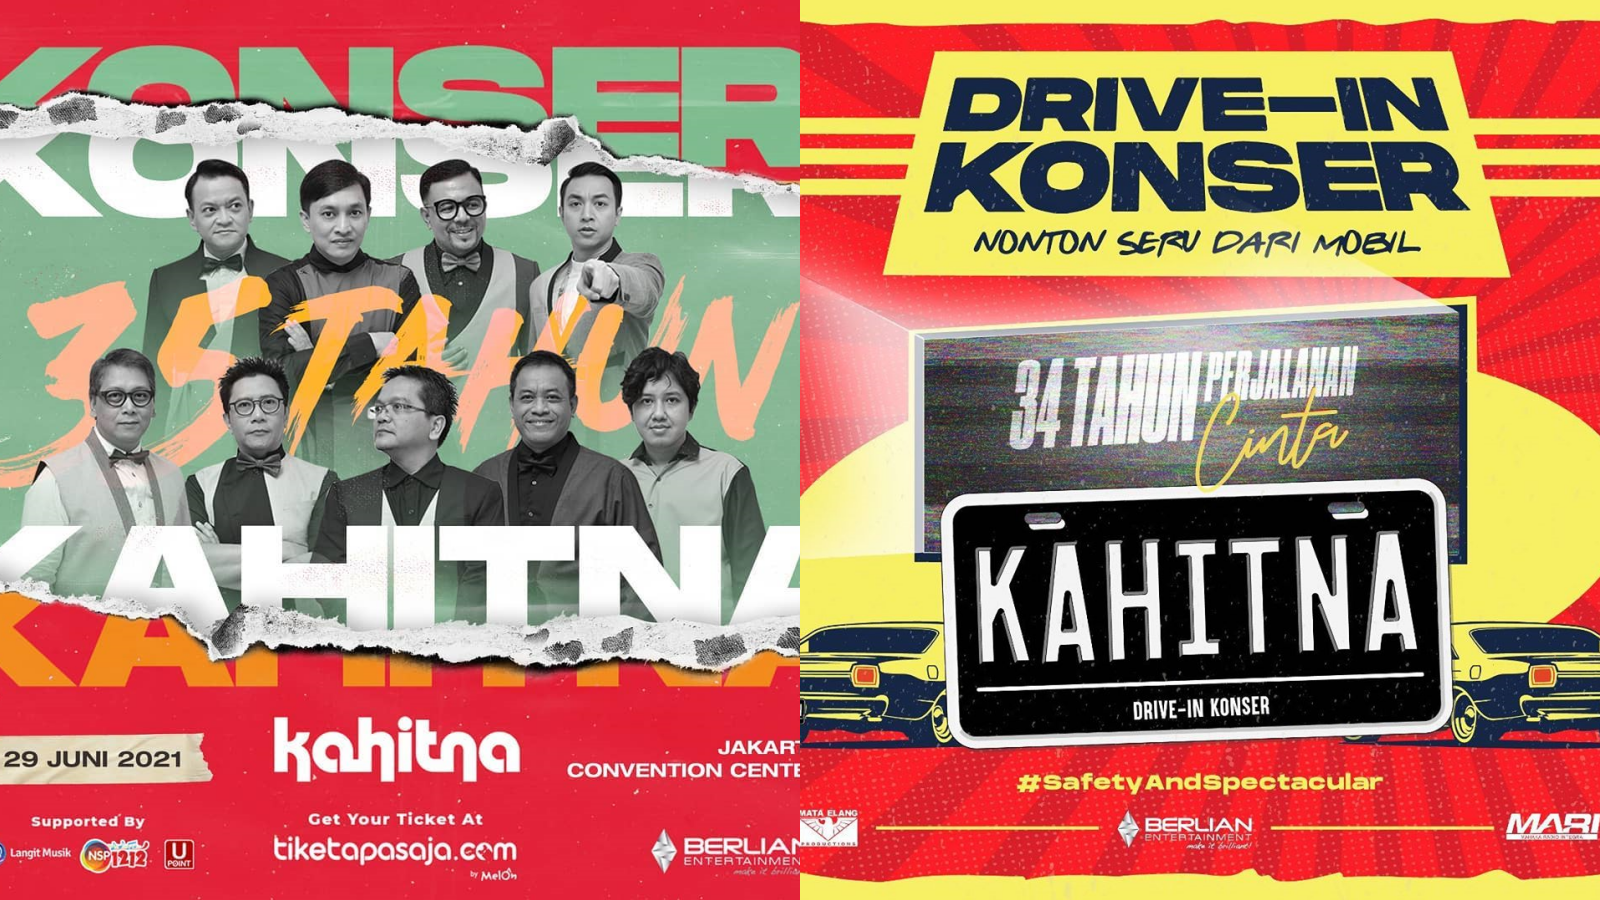 Mantap, Indonesia Bakal Punya Drive-In Konser Gaes! Kahitna Bakal Jadi Bintang Tamu Pertama Lho